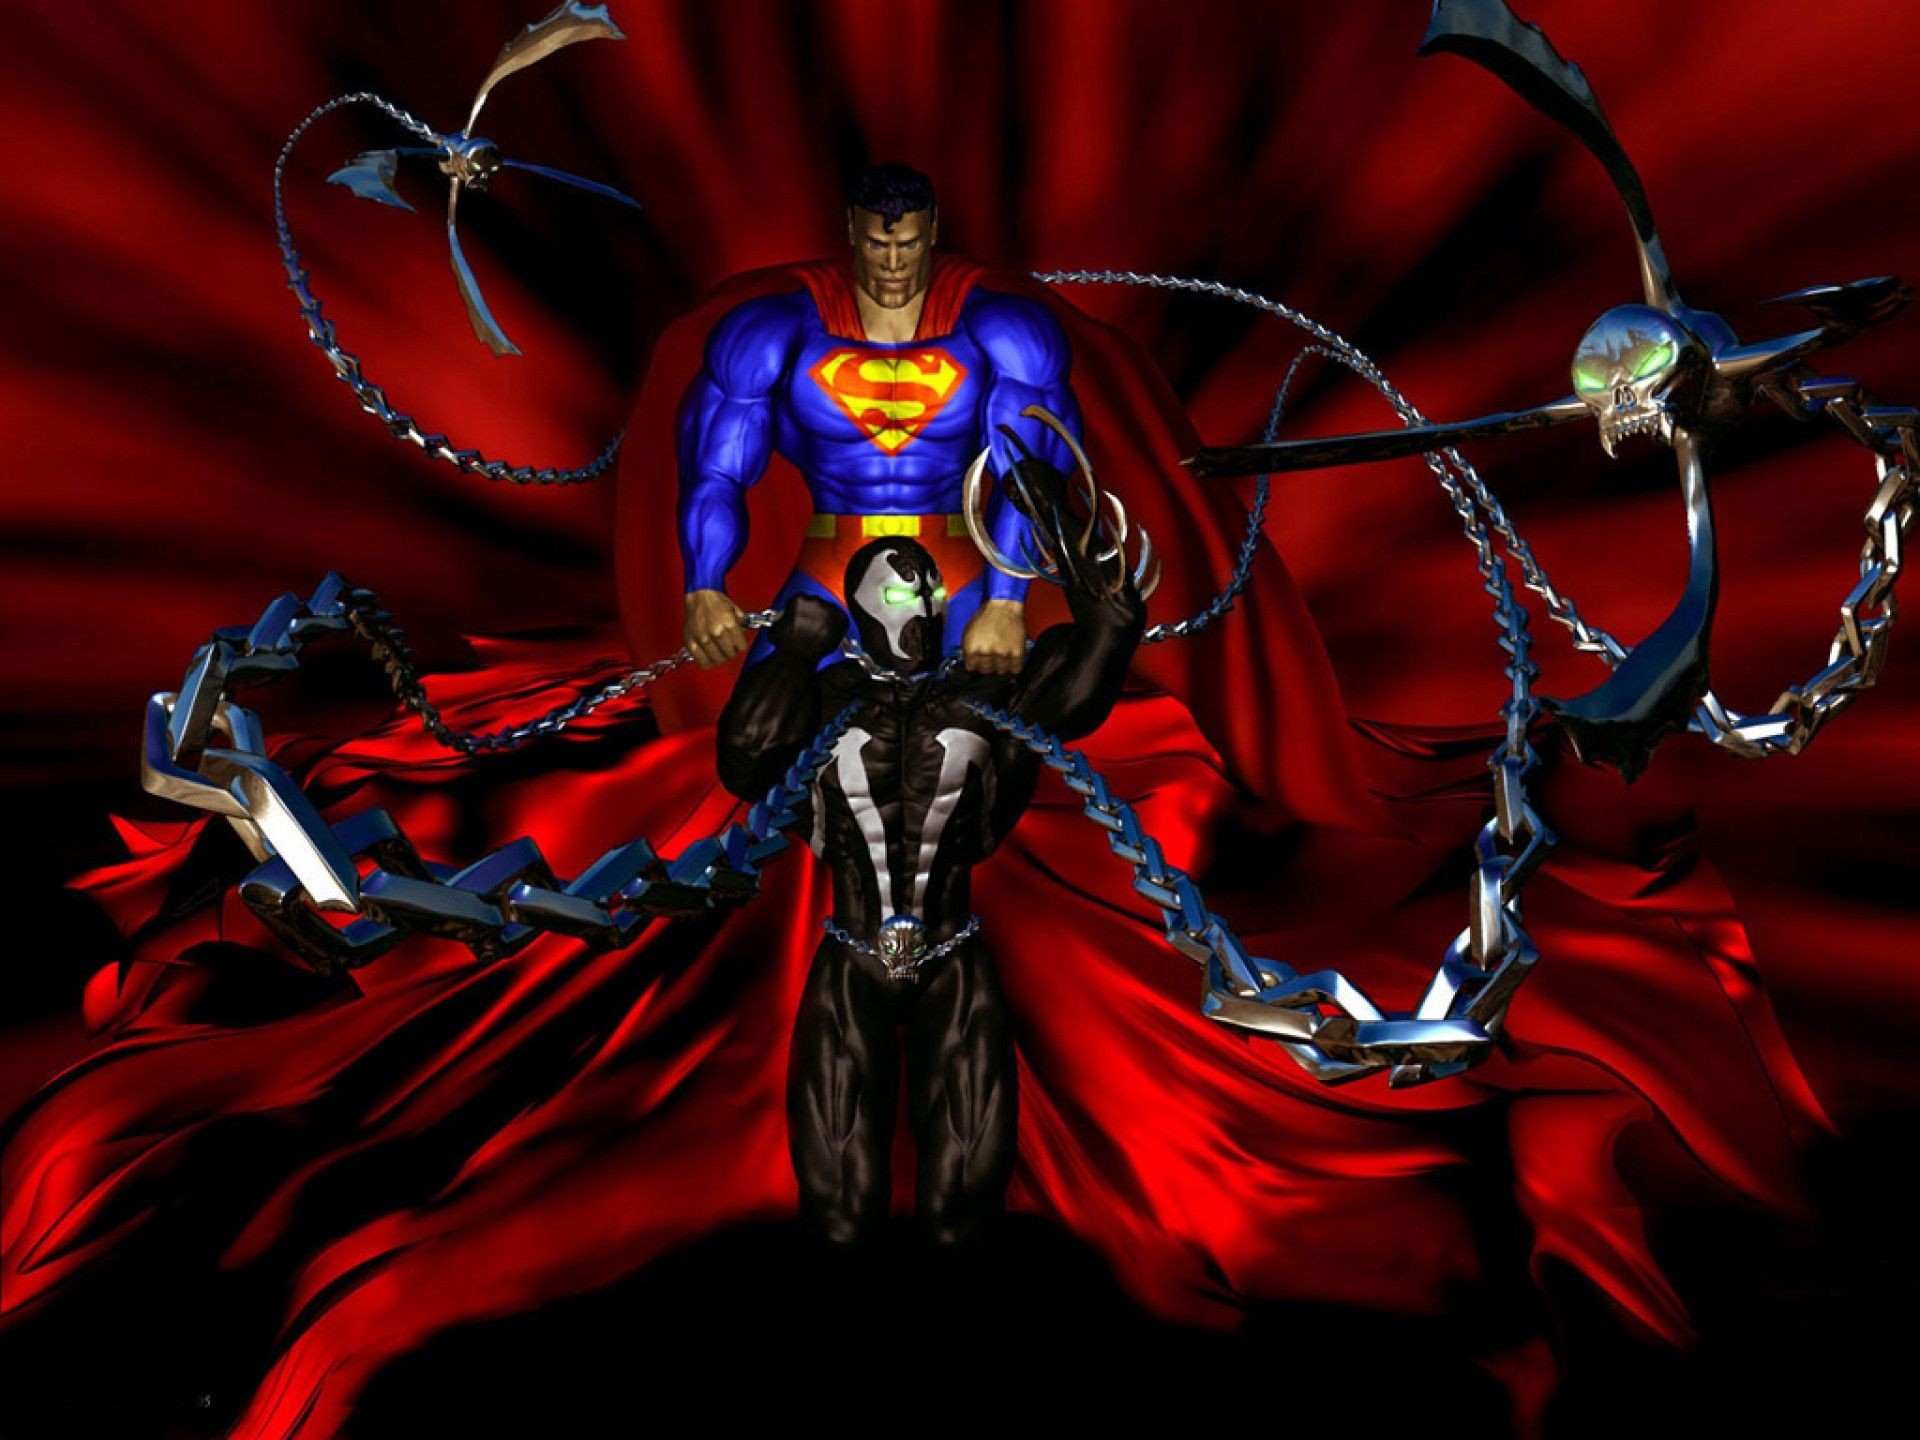 スーパーマンの壁紙,架空の人物,悪魔,cgアートワーク,超自然的な生き物,アクションフィギュア